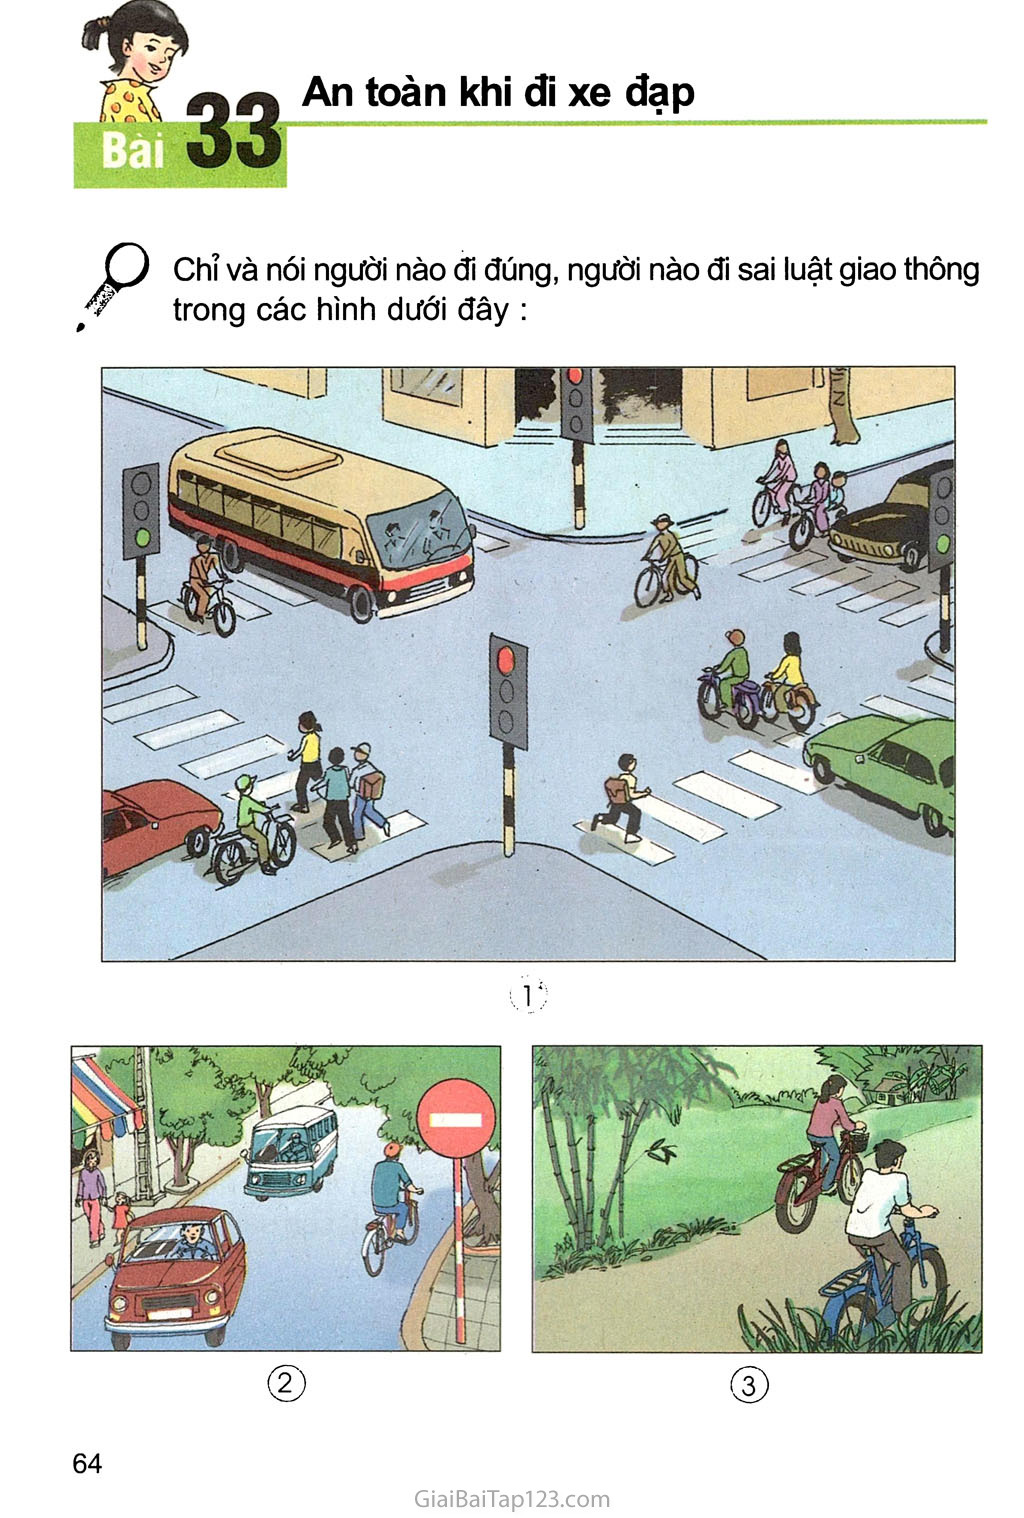 Bài 33. An toàn khi đi xe đạp trang 1